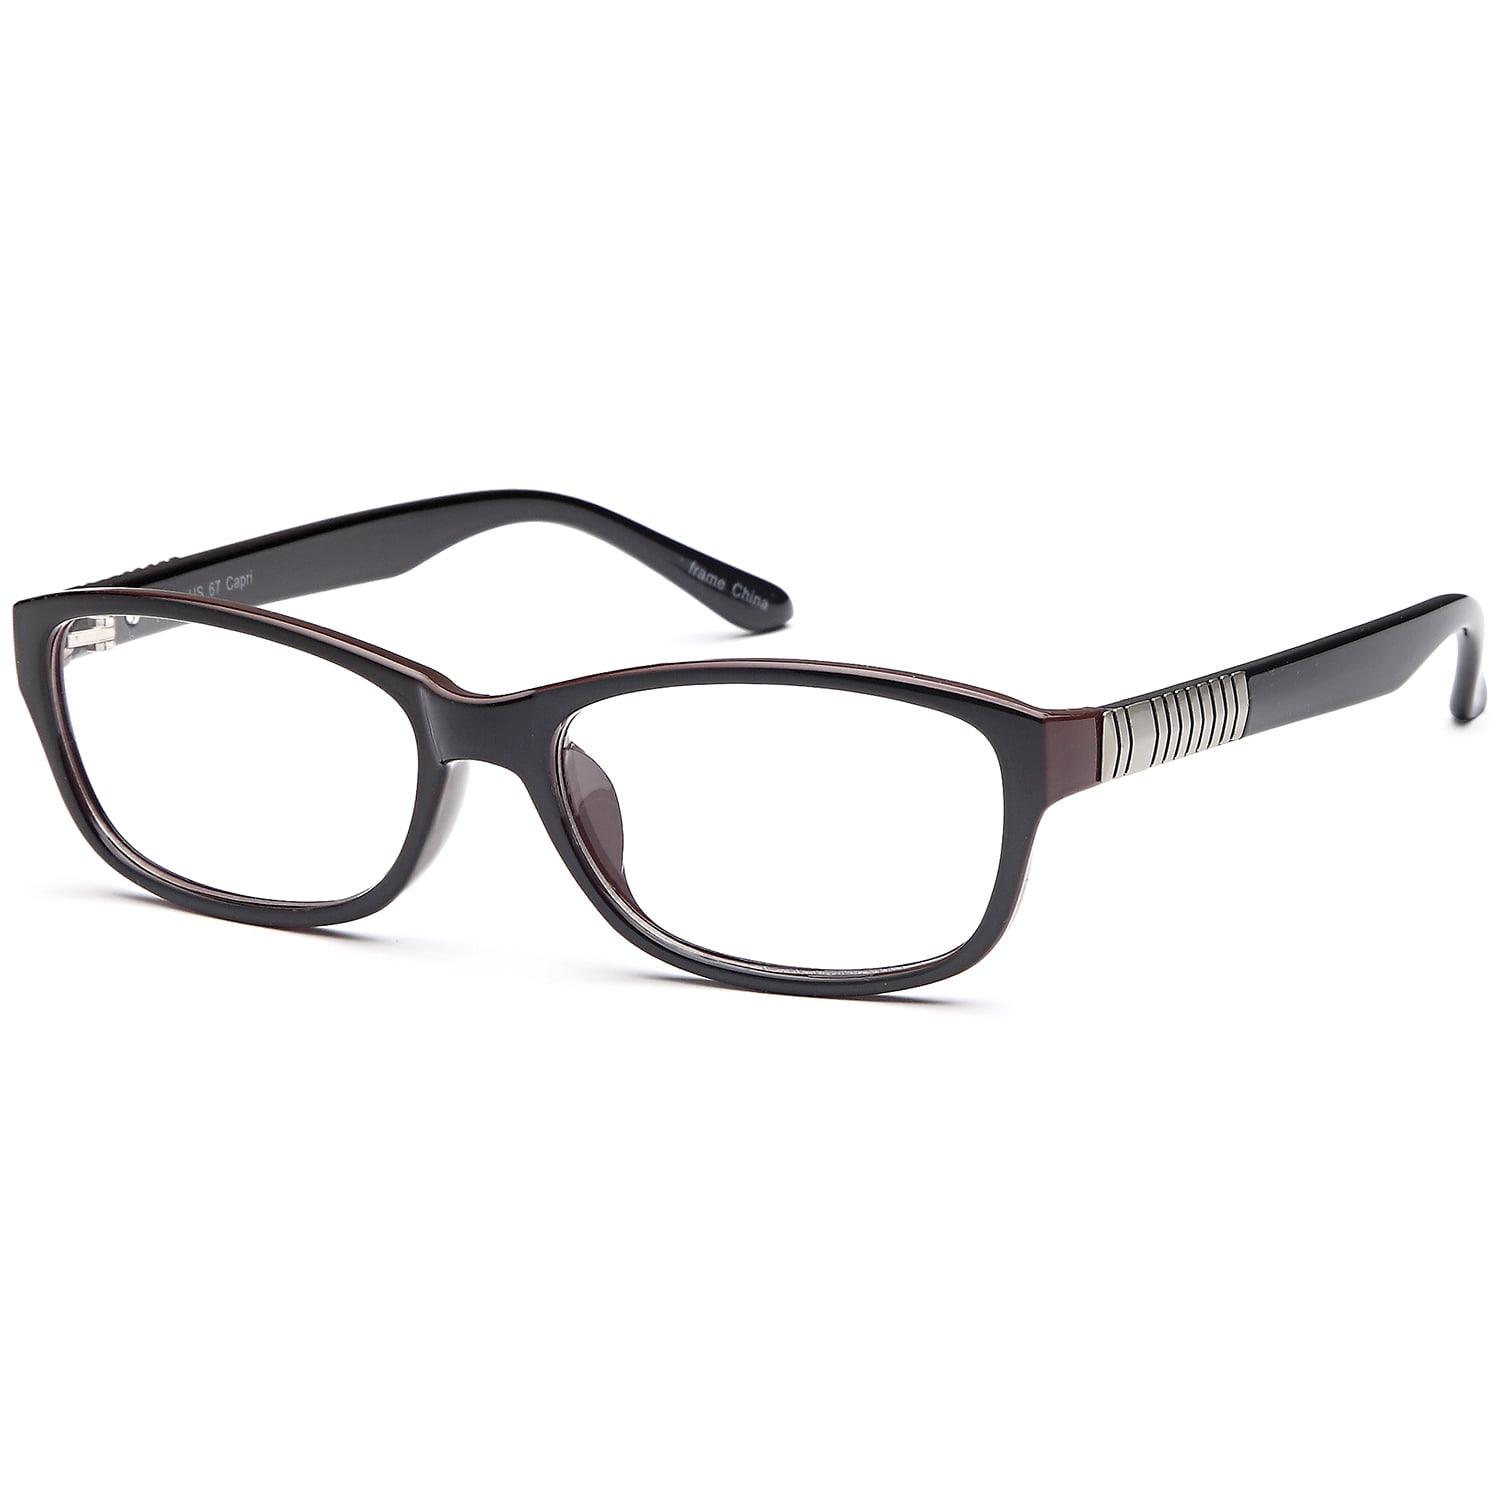 Womens Eyeglasses 51 17 135 Black Plastic